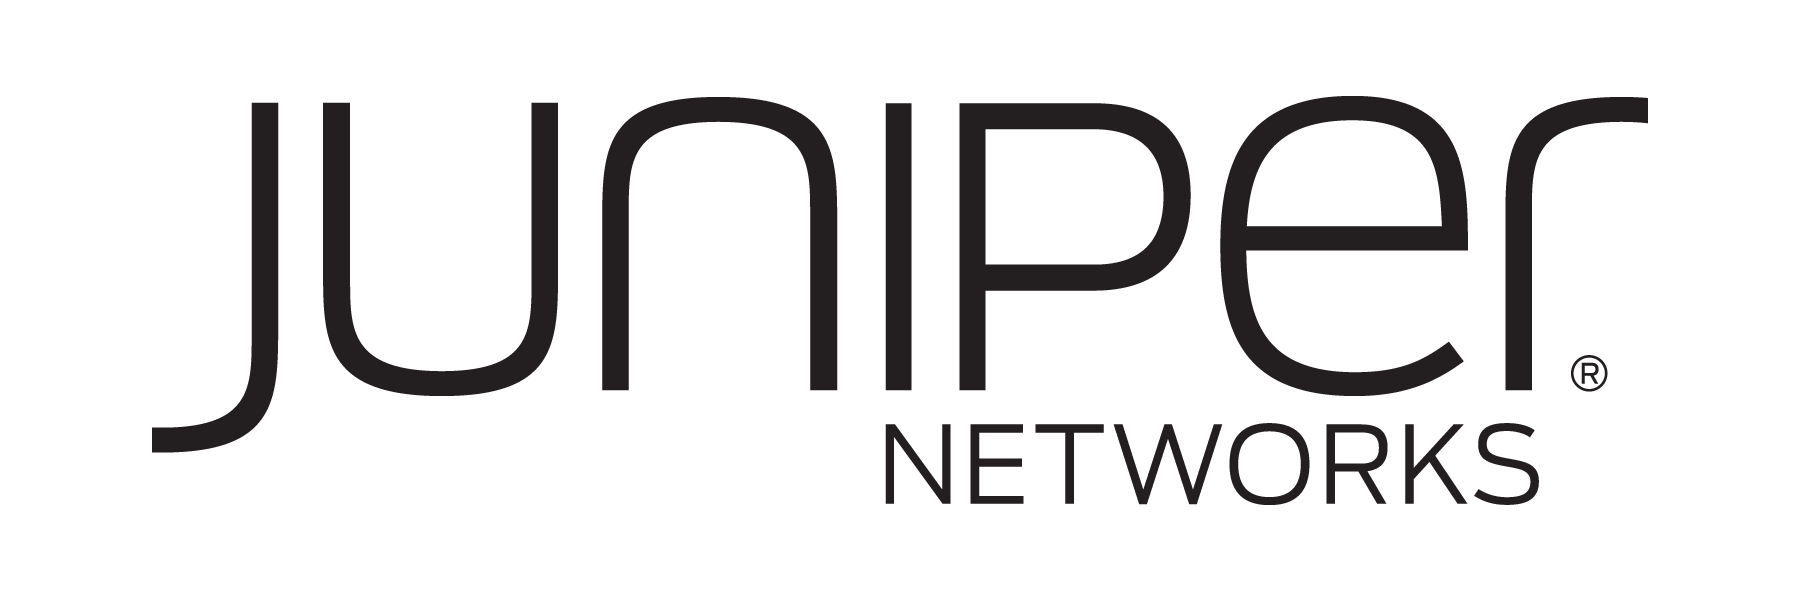 Ruckus Networks Logo - Juniper Networks, Ruckus Wireless team to bring Open Network ...